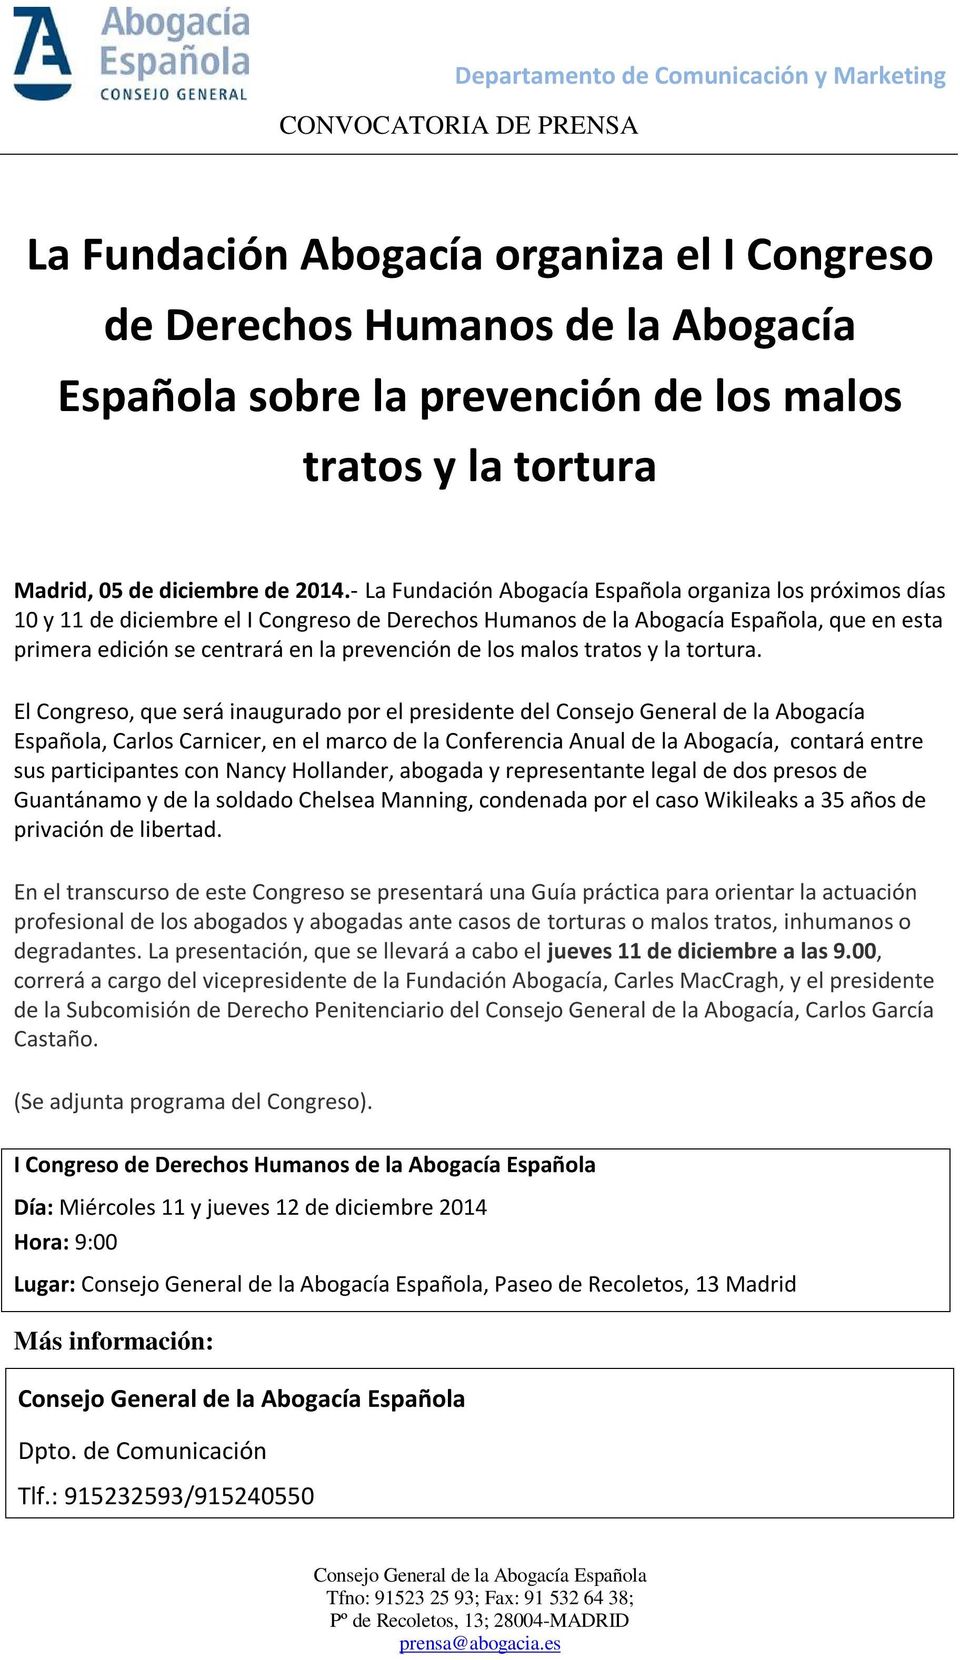 - La Fundación Abogacía Española organiza los próximos días 10 y 11 de diciembre el I Congreso de Derechos Humanos de la Abogacía Española, que en esta primera edición se centrará en la prevención de